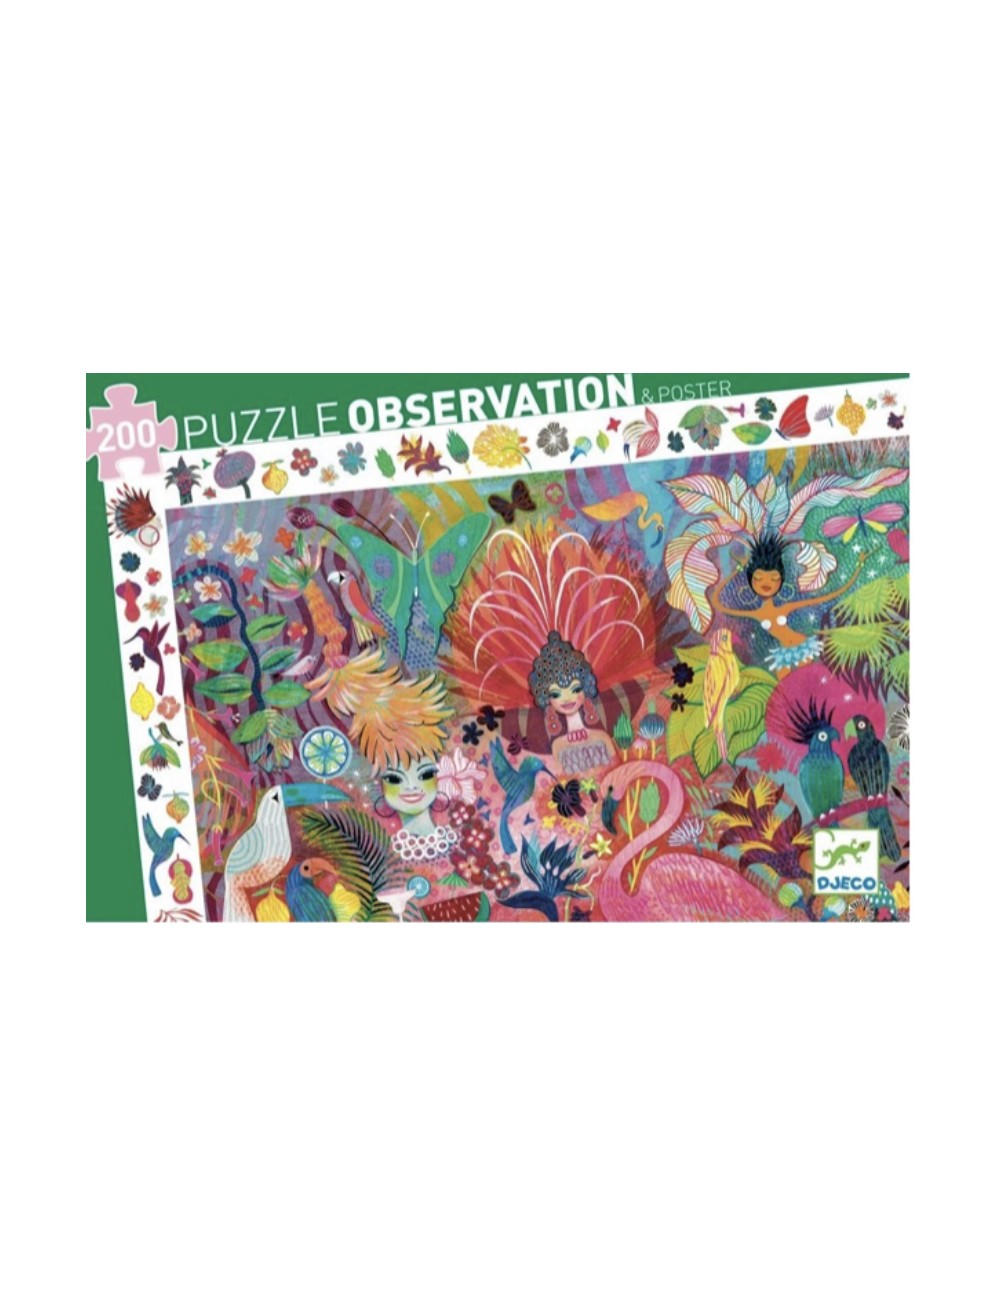 Puzzle d'observation carnaval de rio 200 pièces - Djeco